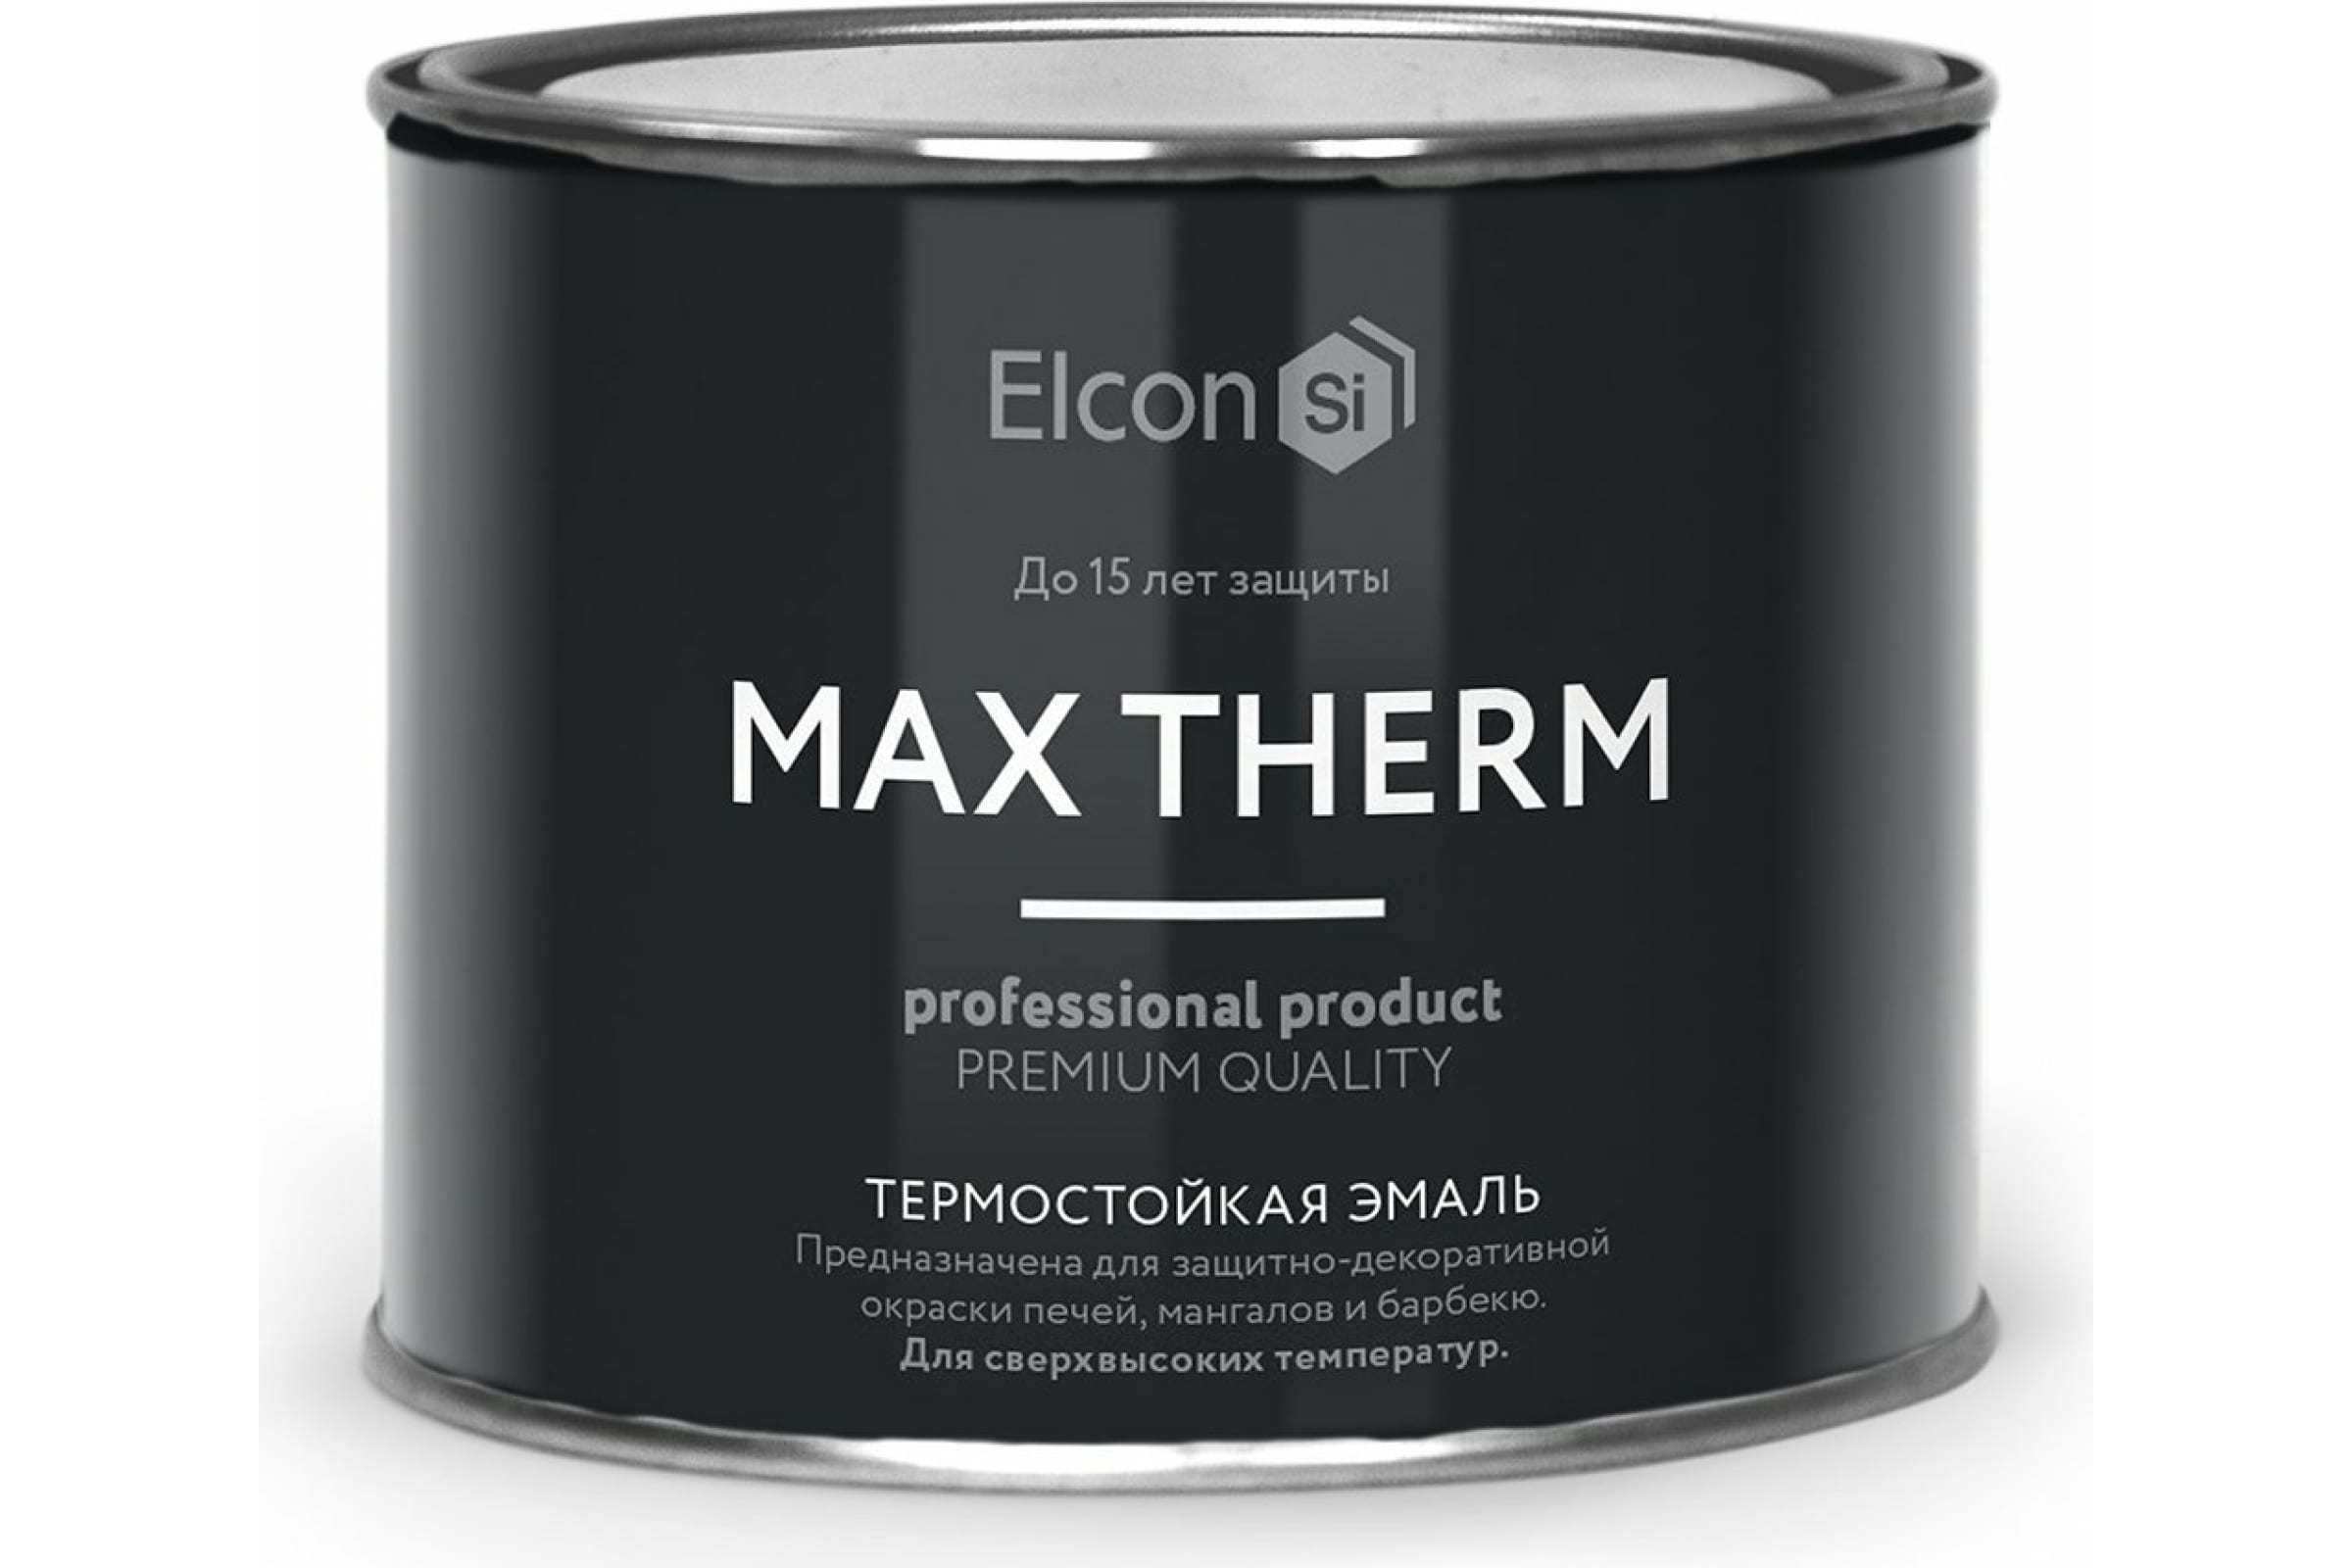 Термостойкая антикоррозионная эмаль Elcon Max Therm до 400 градусов, 0,4 л, синяя термостойкая антикоррозионная эмаль elcon max therm до 700 градусов 0 4 л зеленая